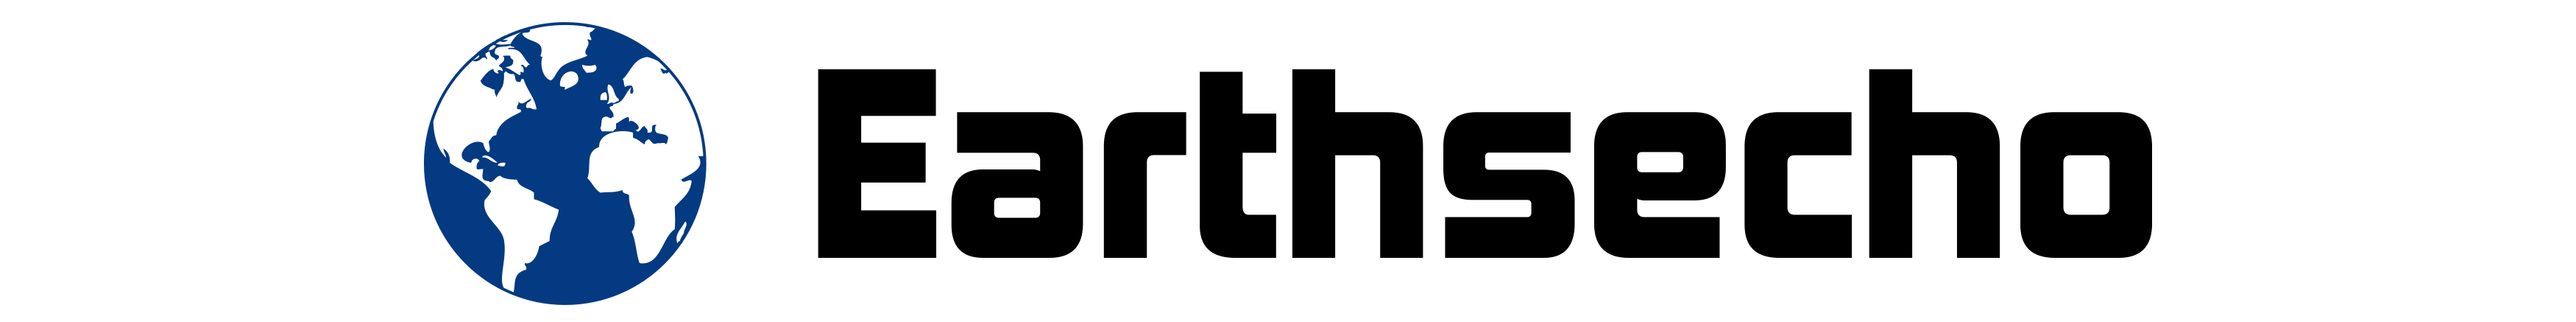 Earthsecho logo